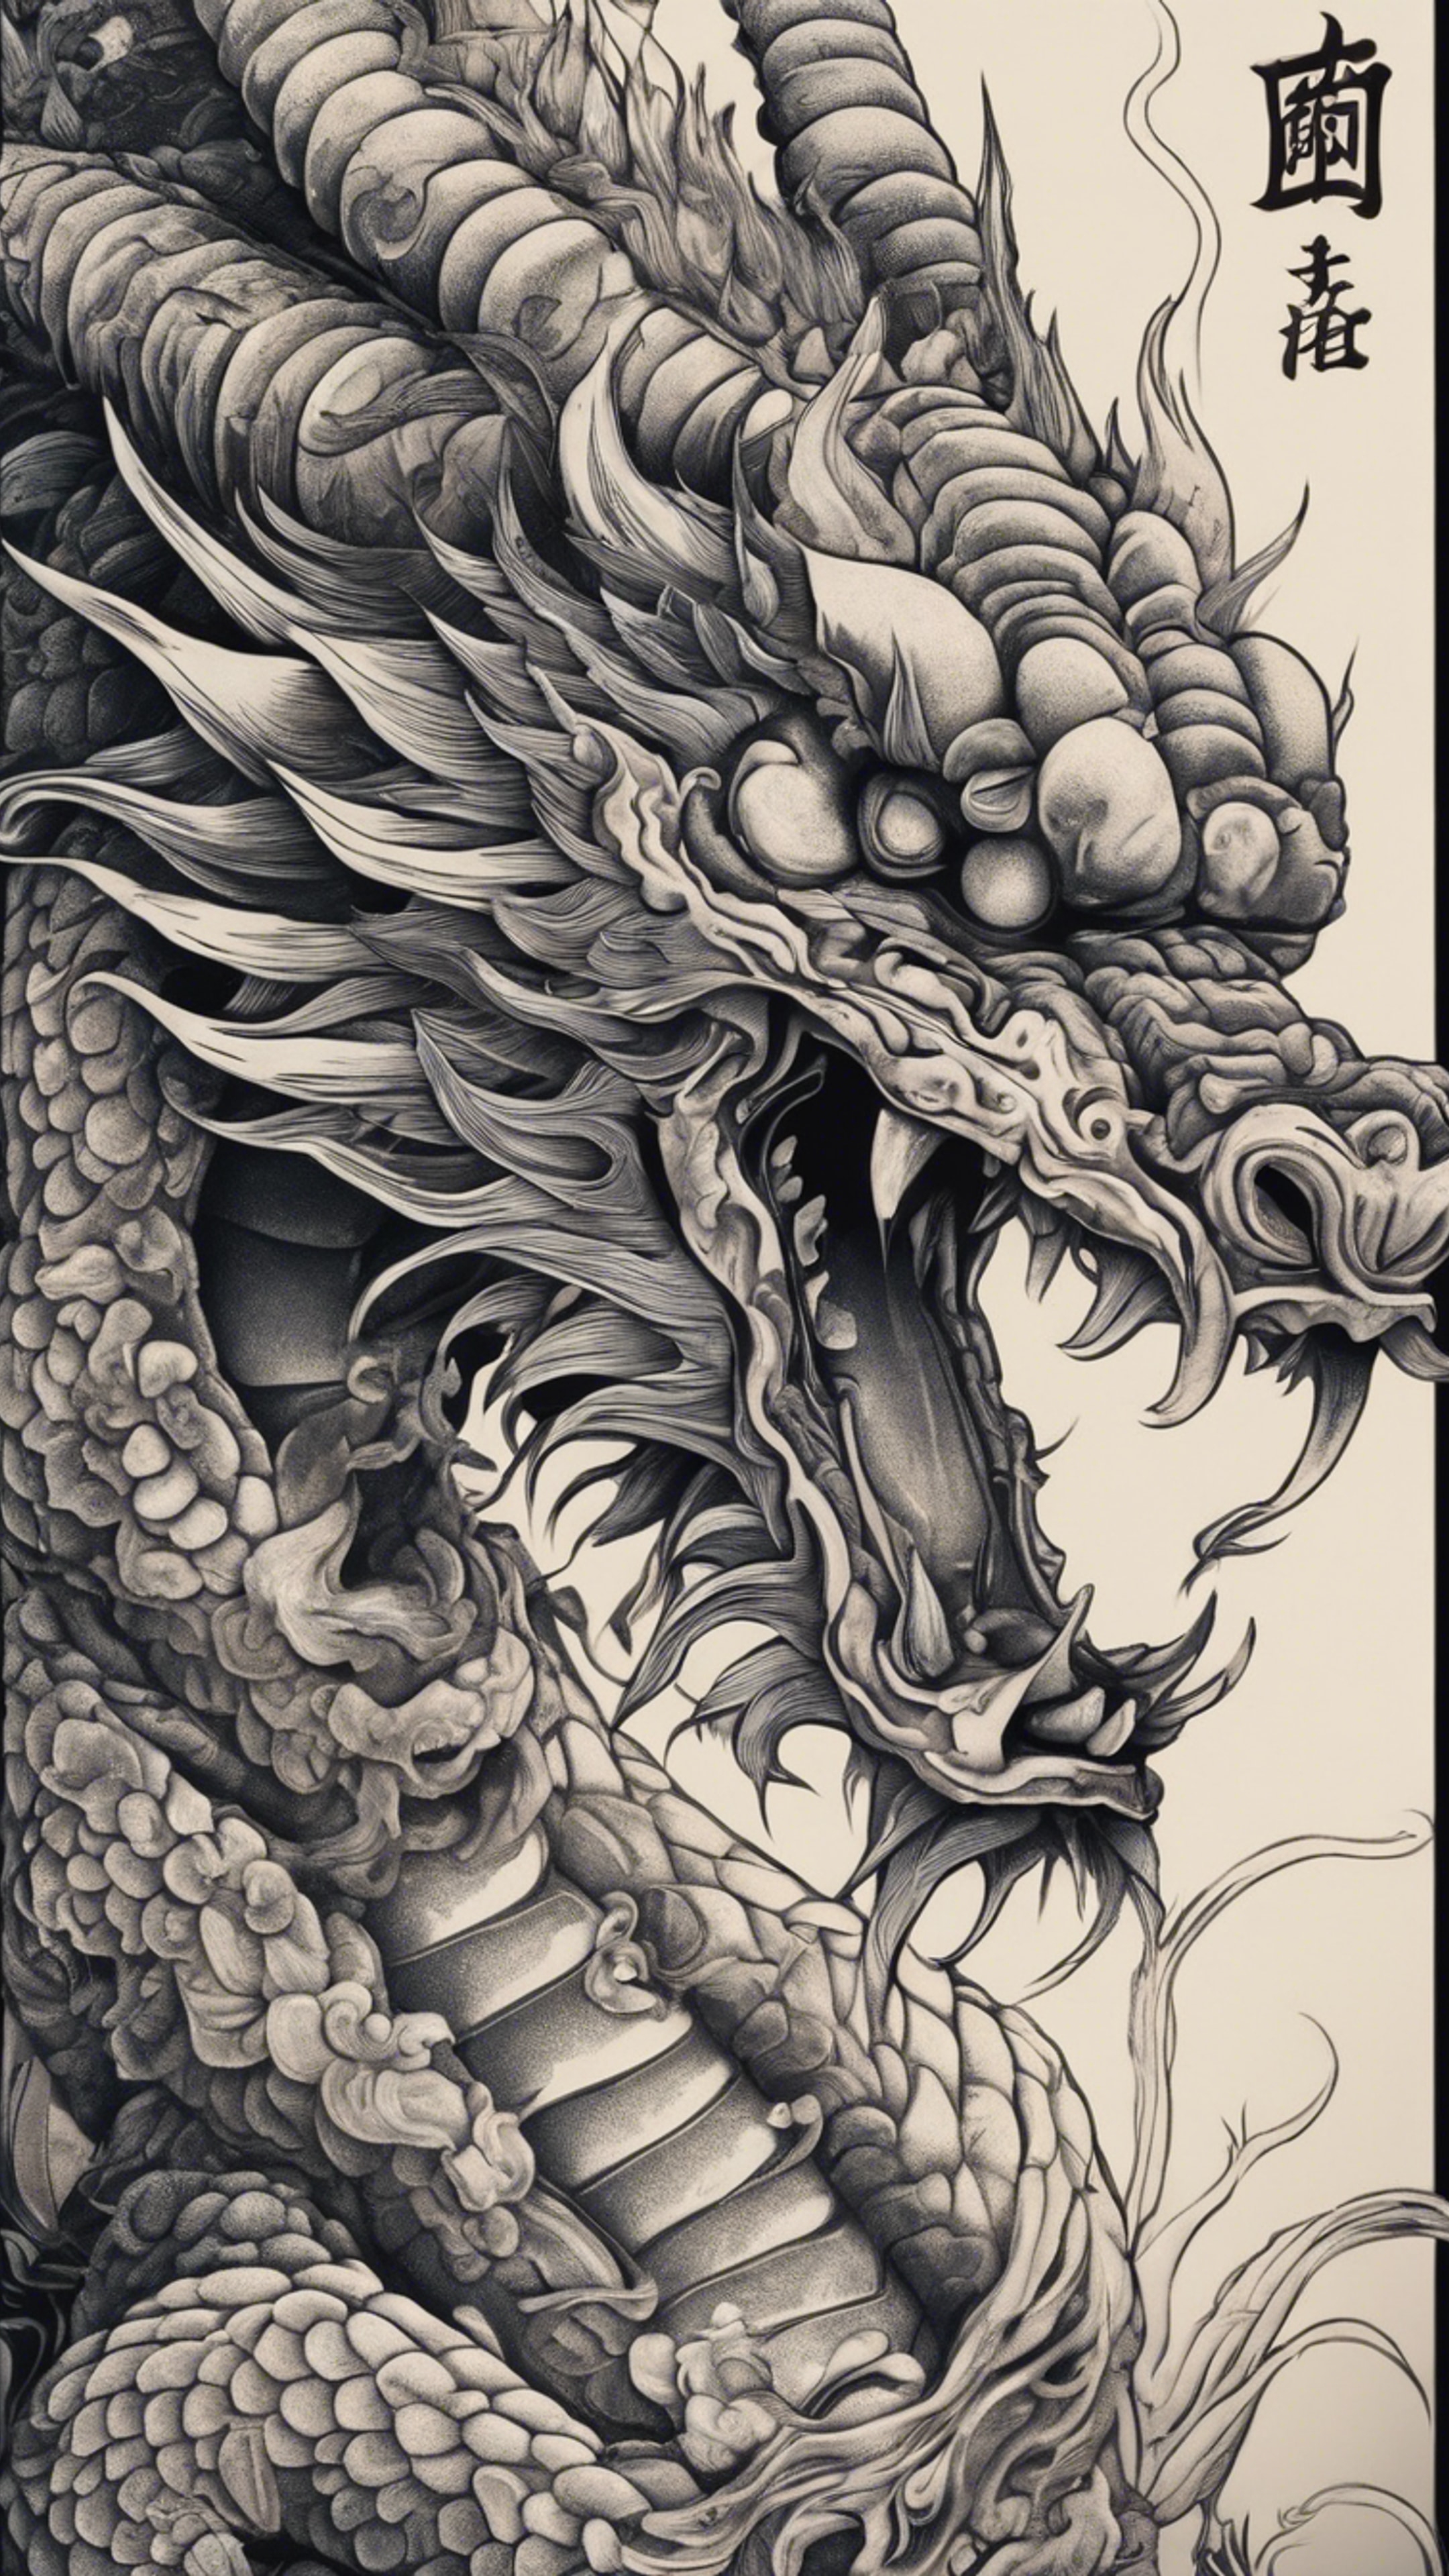 A Japanese dragon tattoo design with intricate details. Divar kağızı[fa4ff1f2e6c24a2f94e4]